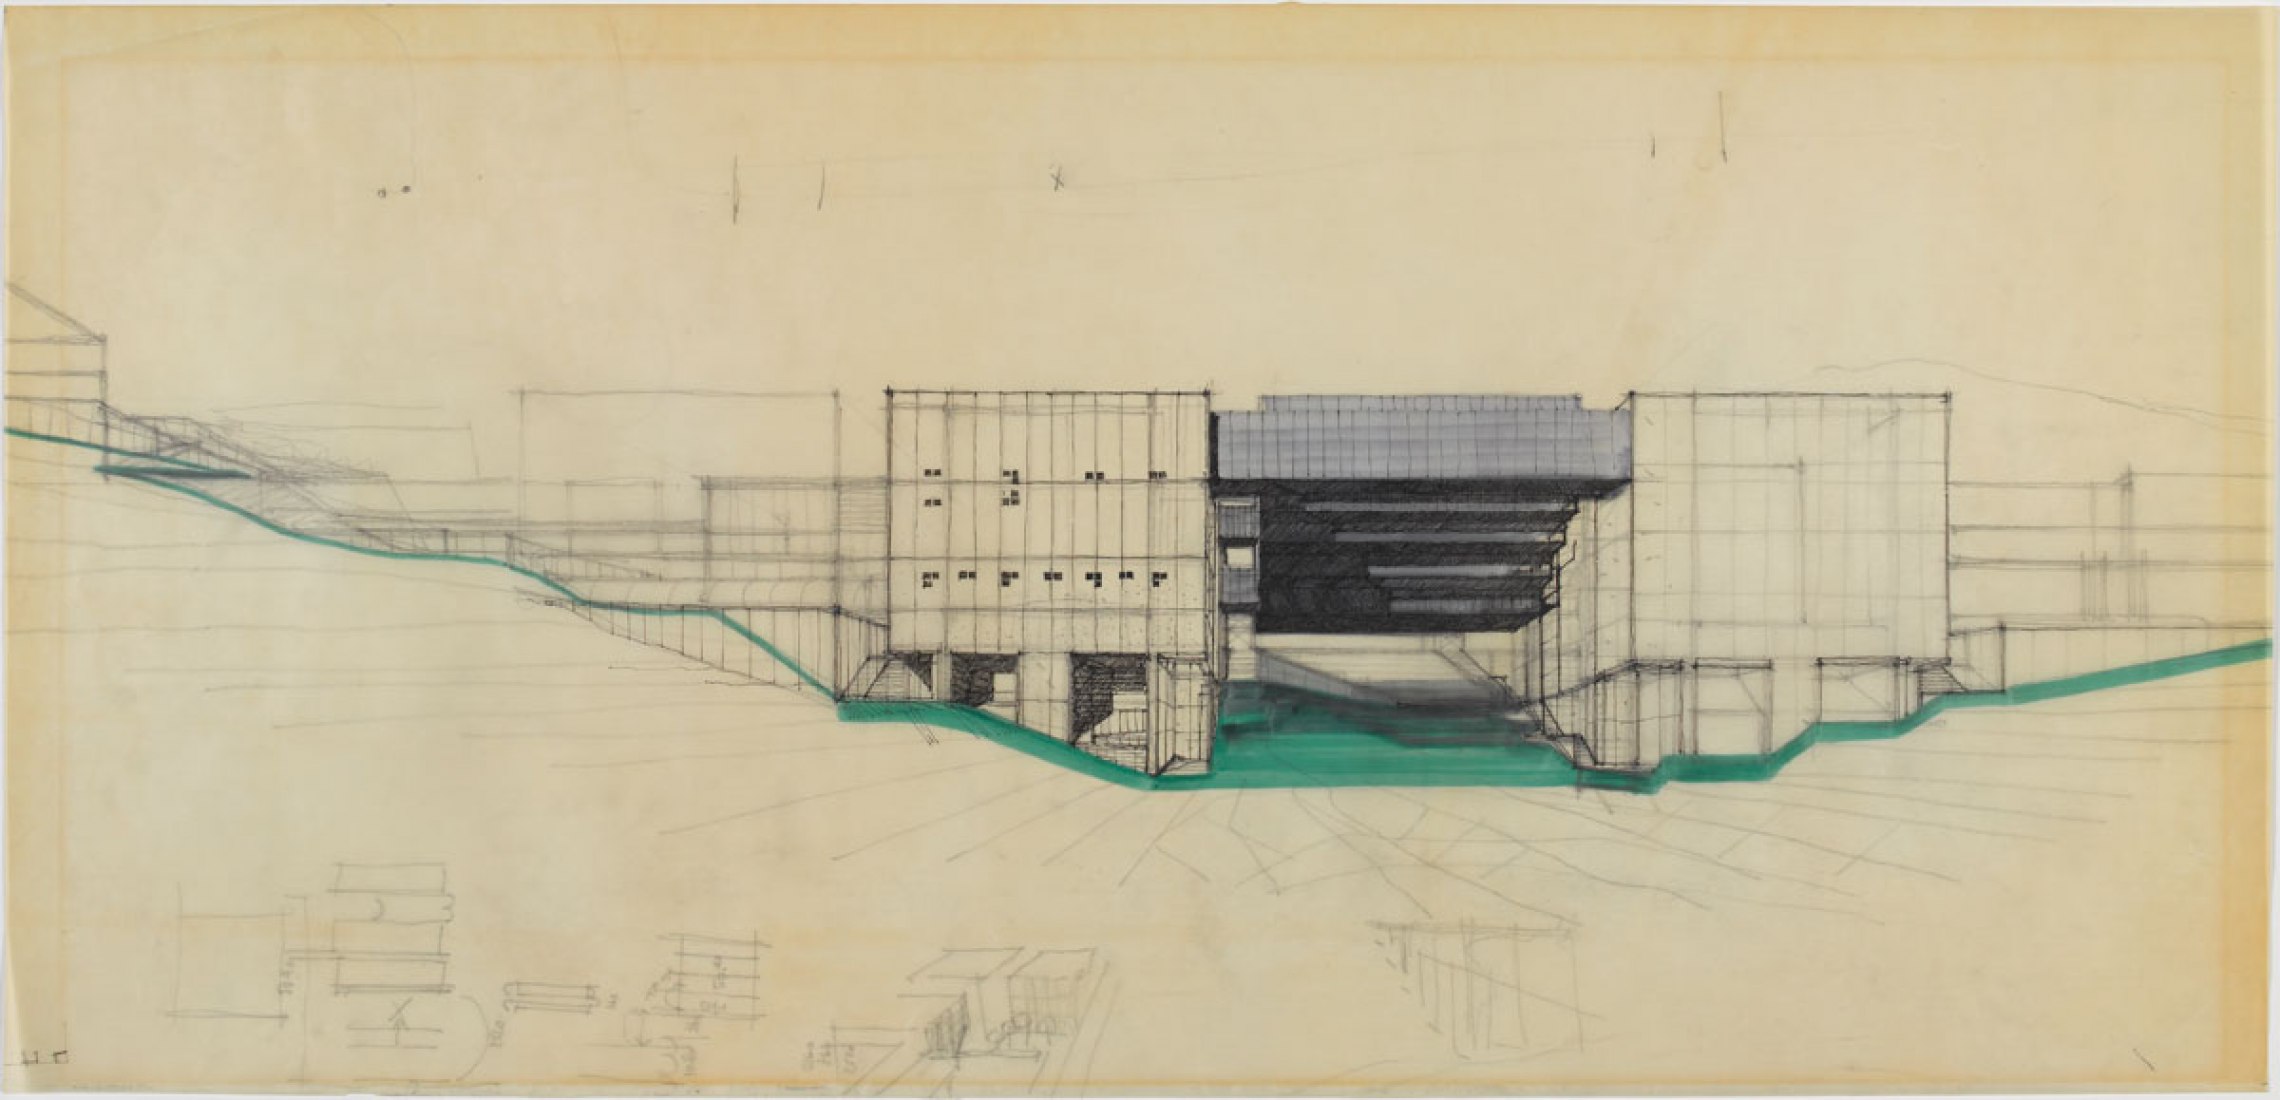 La invención del Territorio por Vittorio Gregotti. Centre Pompidou